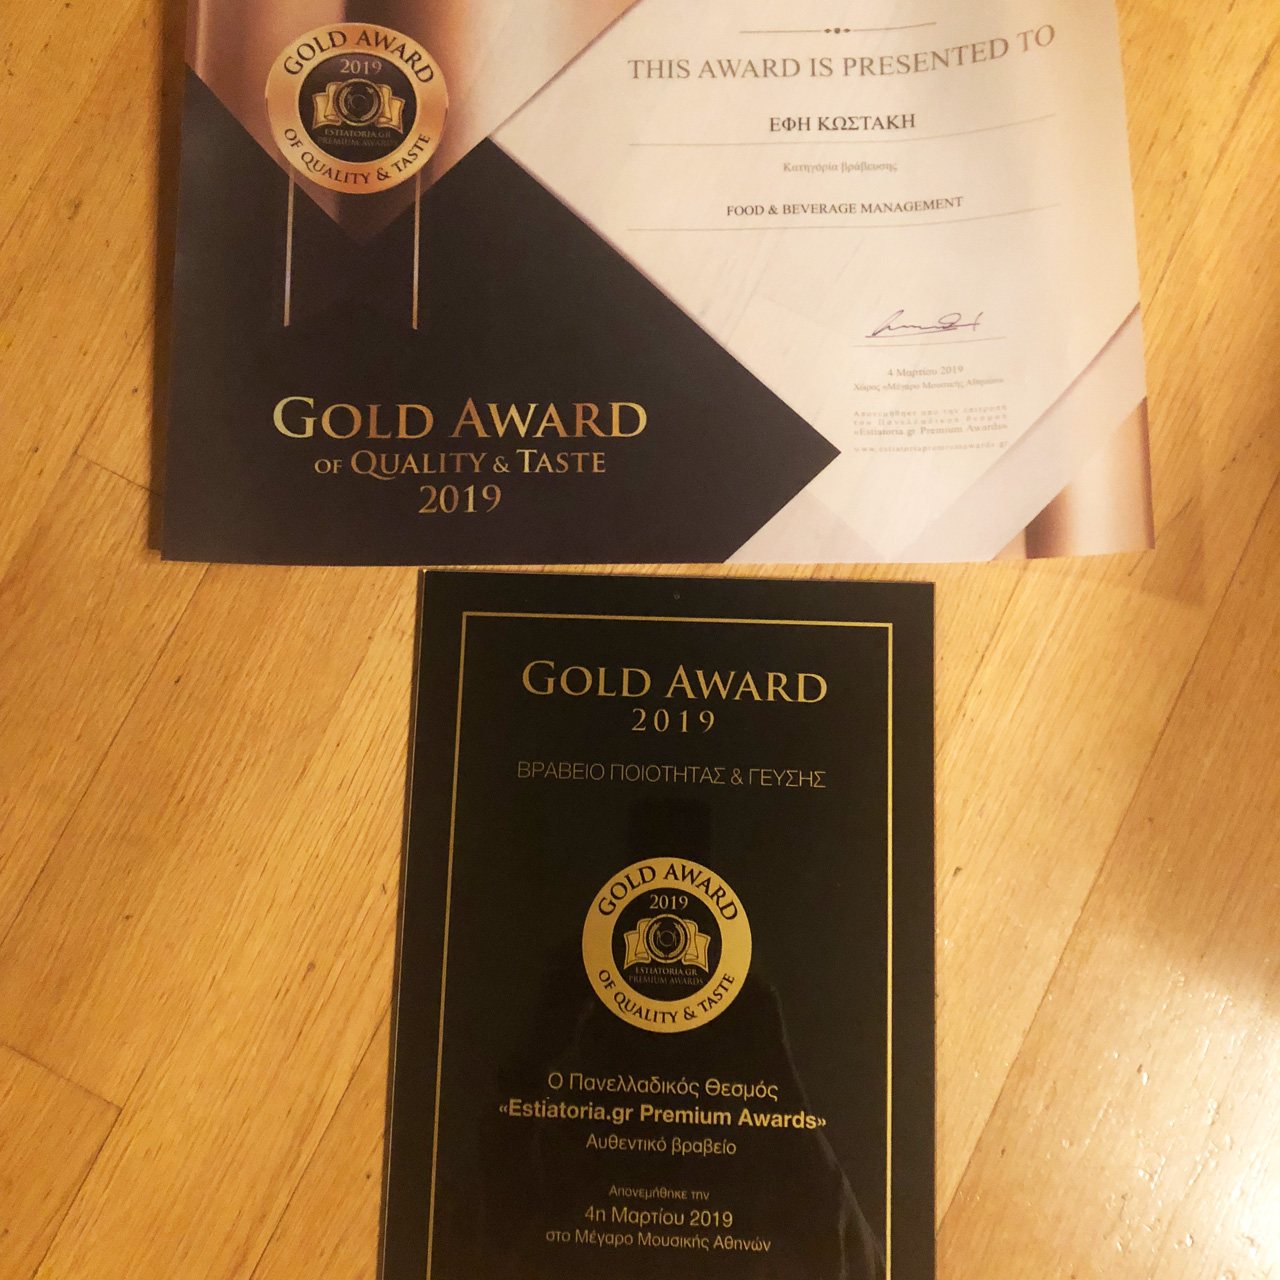 Έφη Κωστάκη GOLD Award 2019 στην κατηγορία Food & Beverage Management